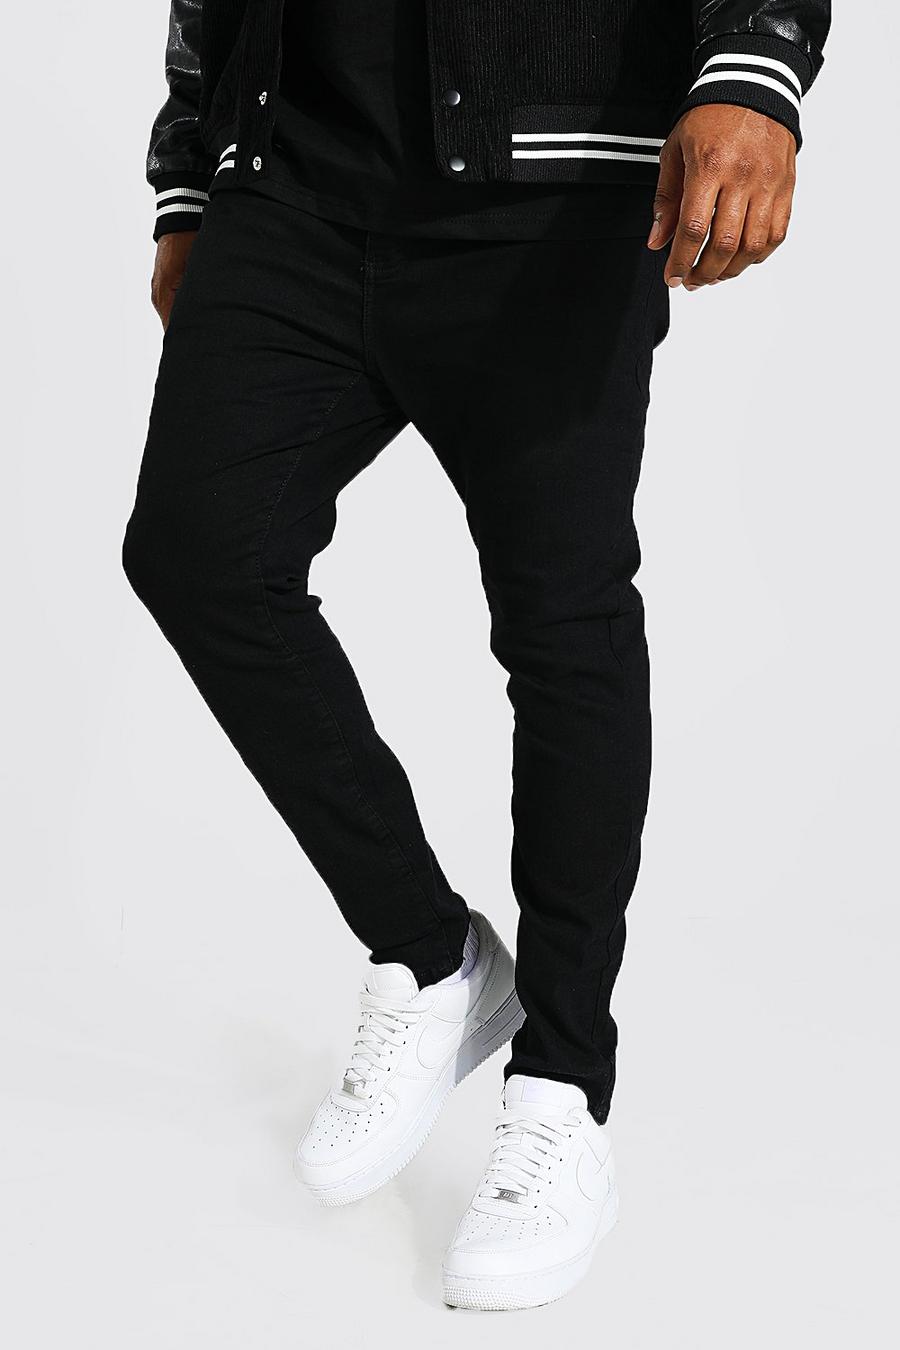 שחור מכנסי ג'ינס סופר סקיני לגברים גדולים וגבוהים